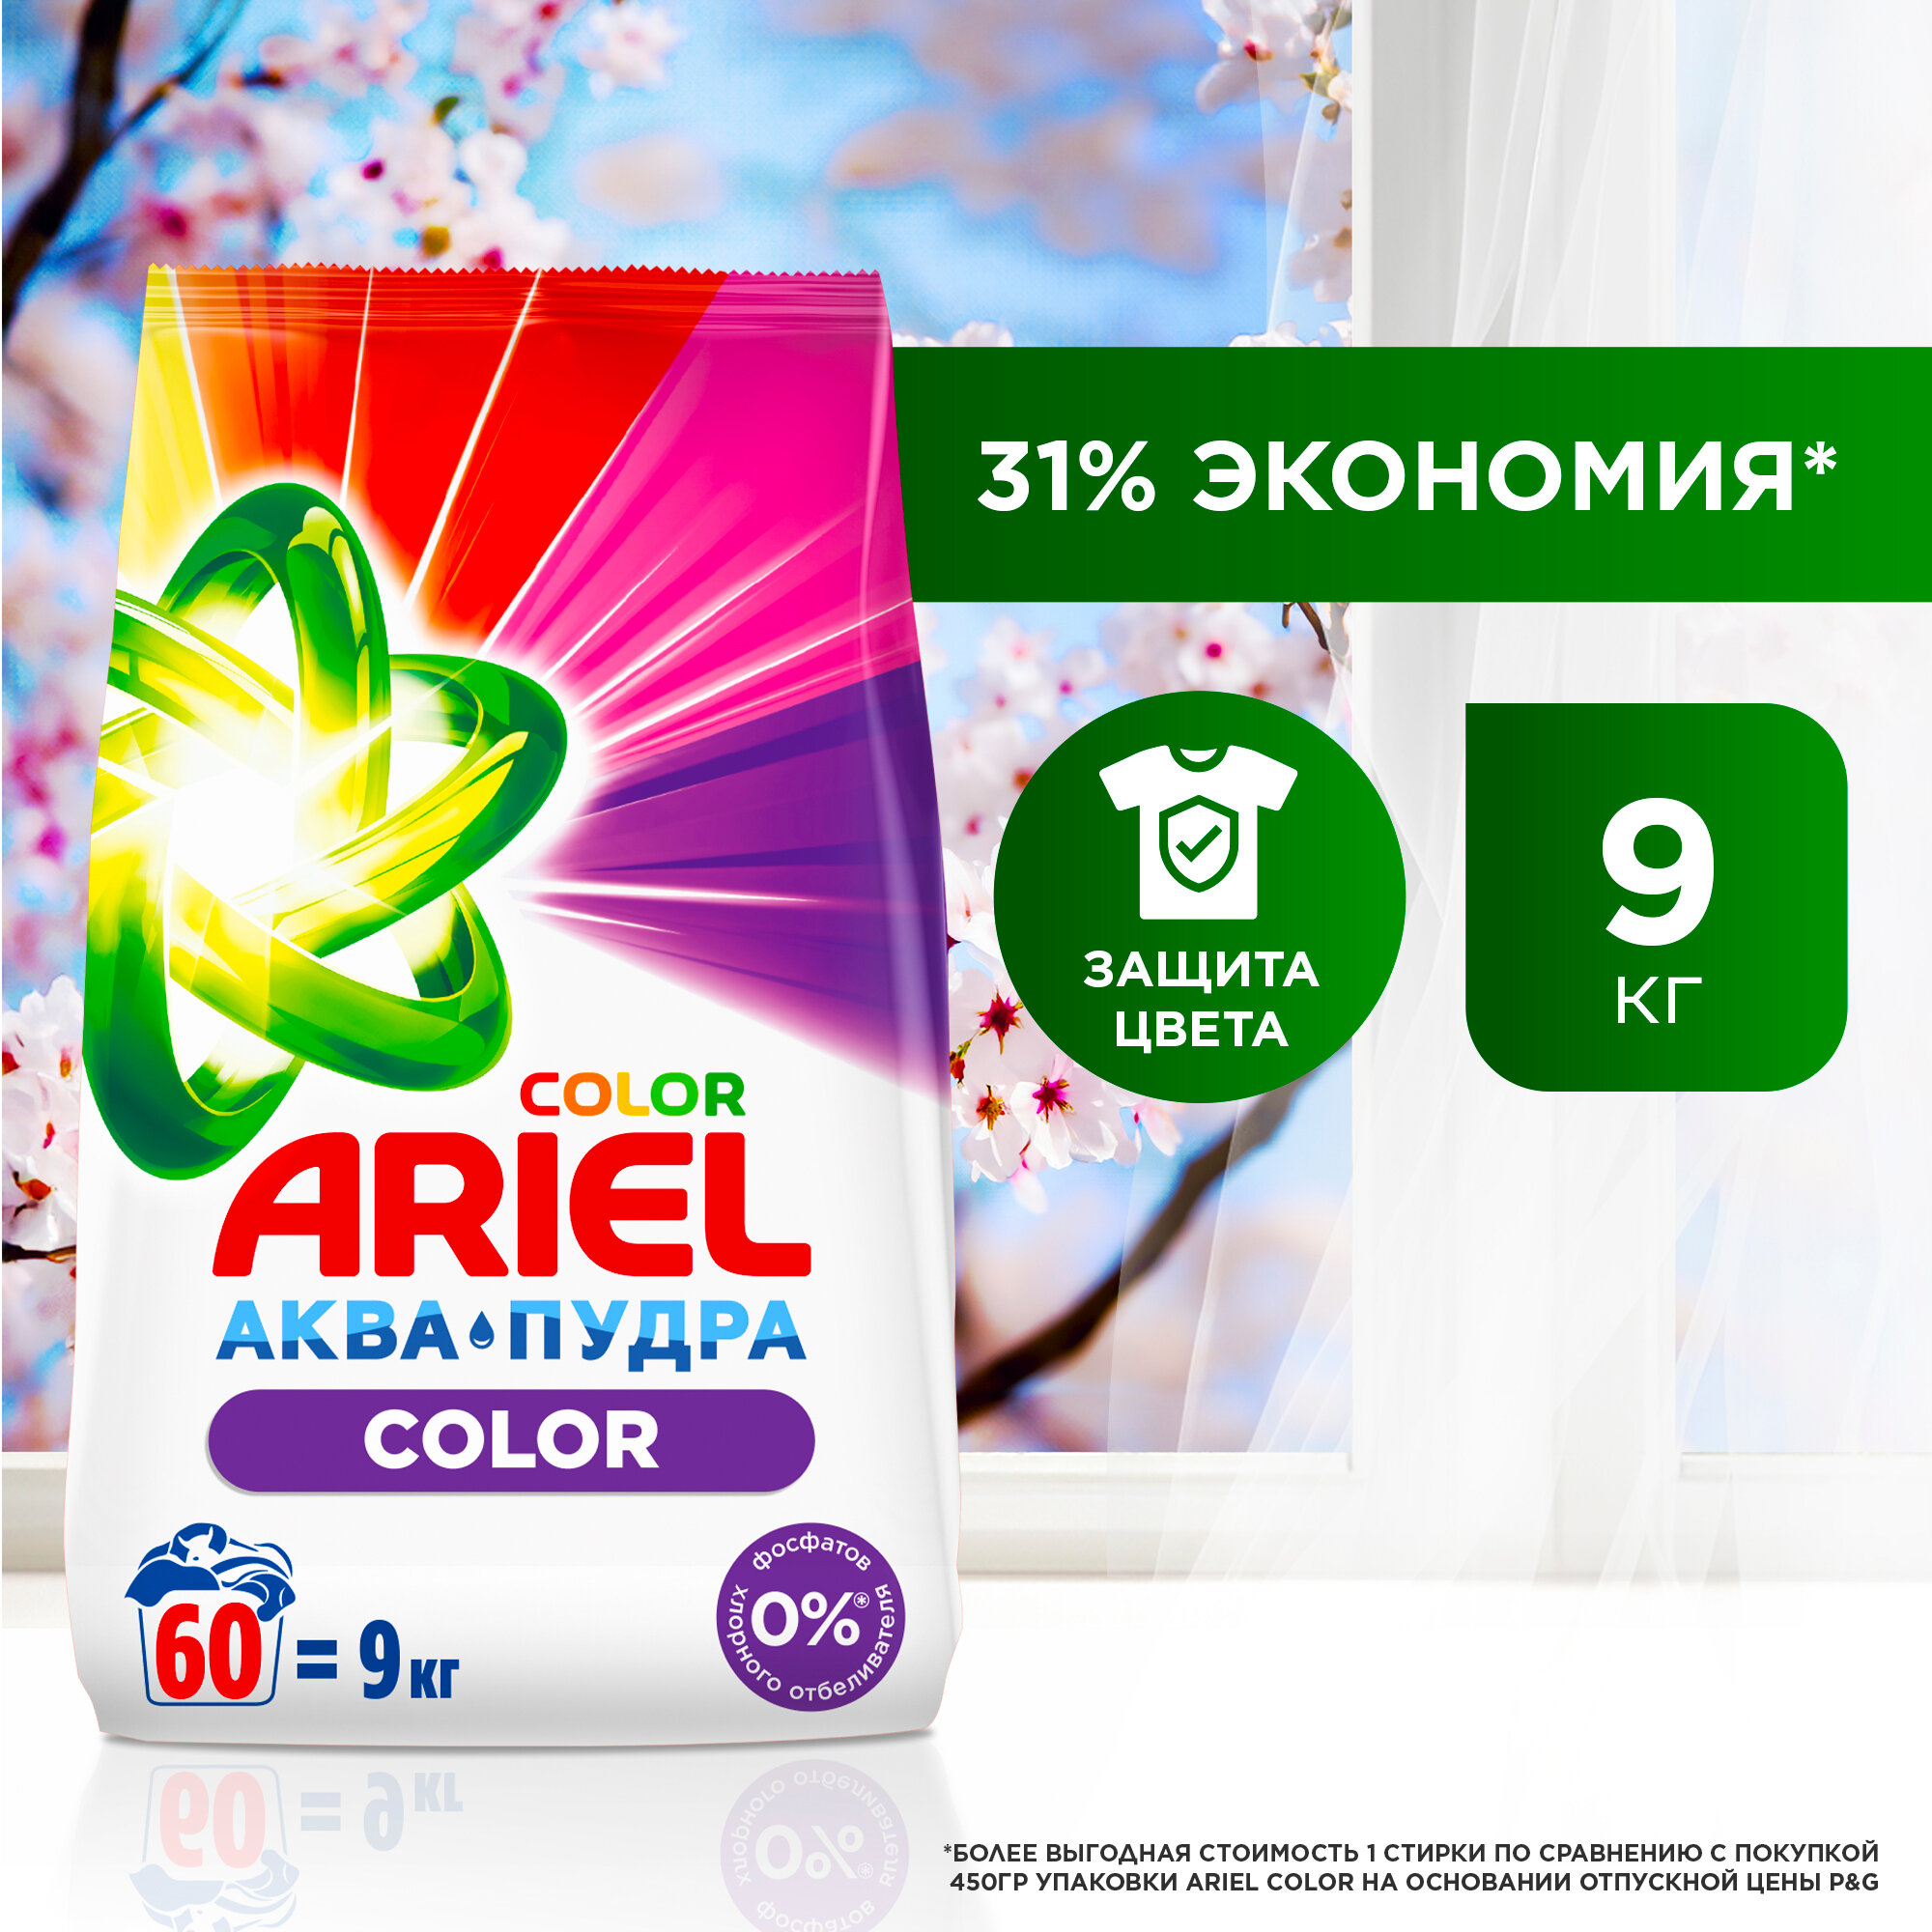   Ariel Color&Style, , 9 